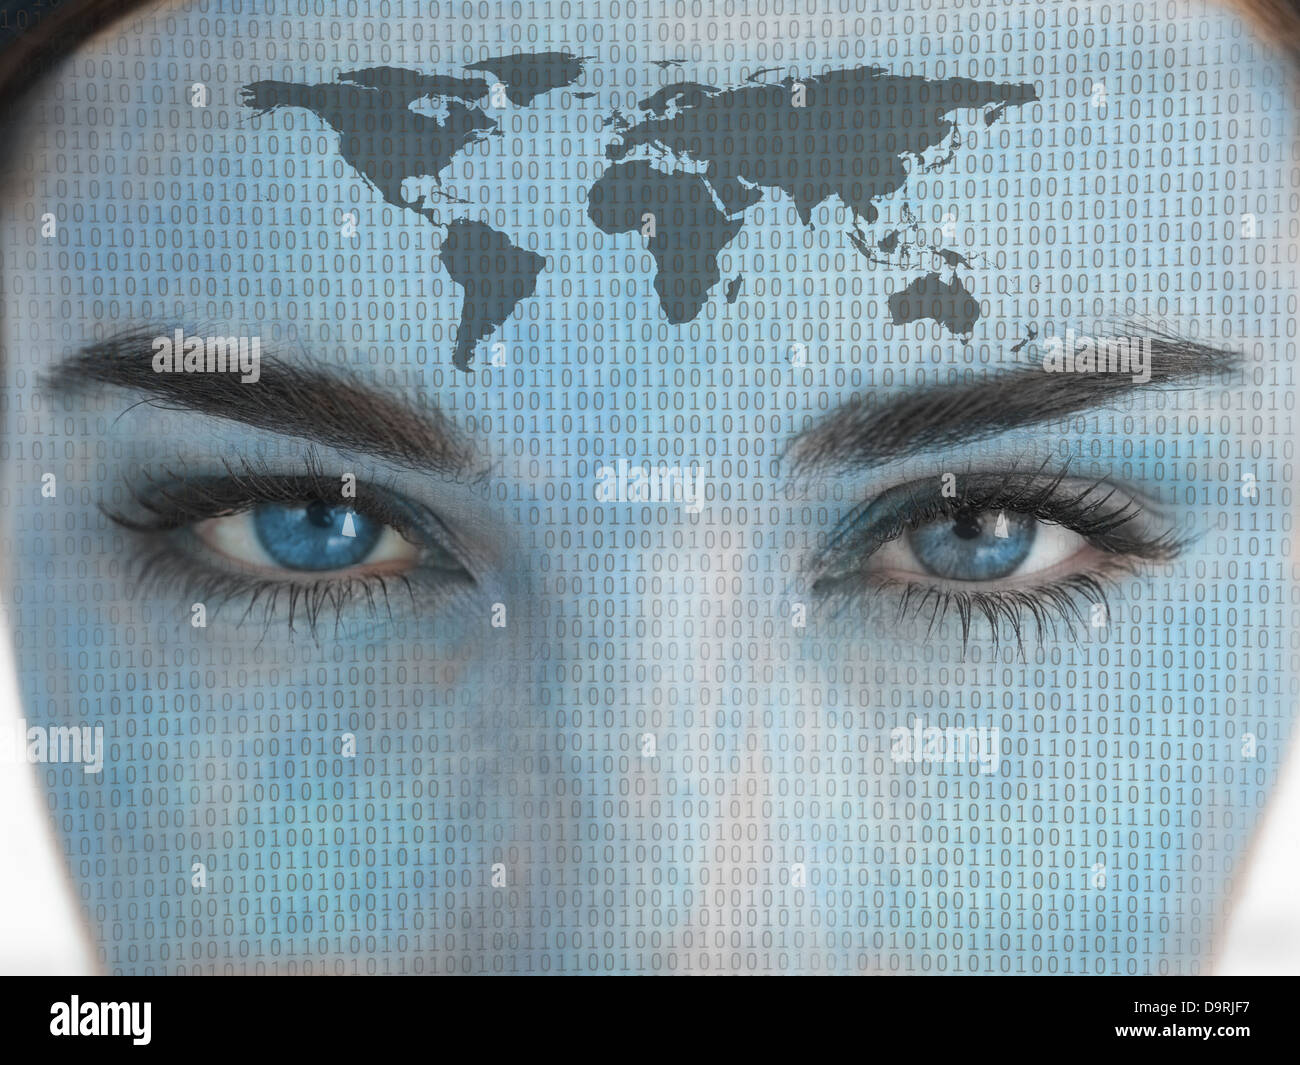 Belle femme aux yeux bleus avec un codage binaire et la carte sur le visage Banque D'Images